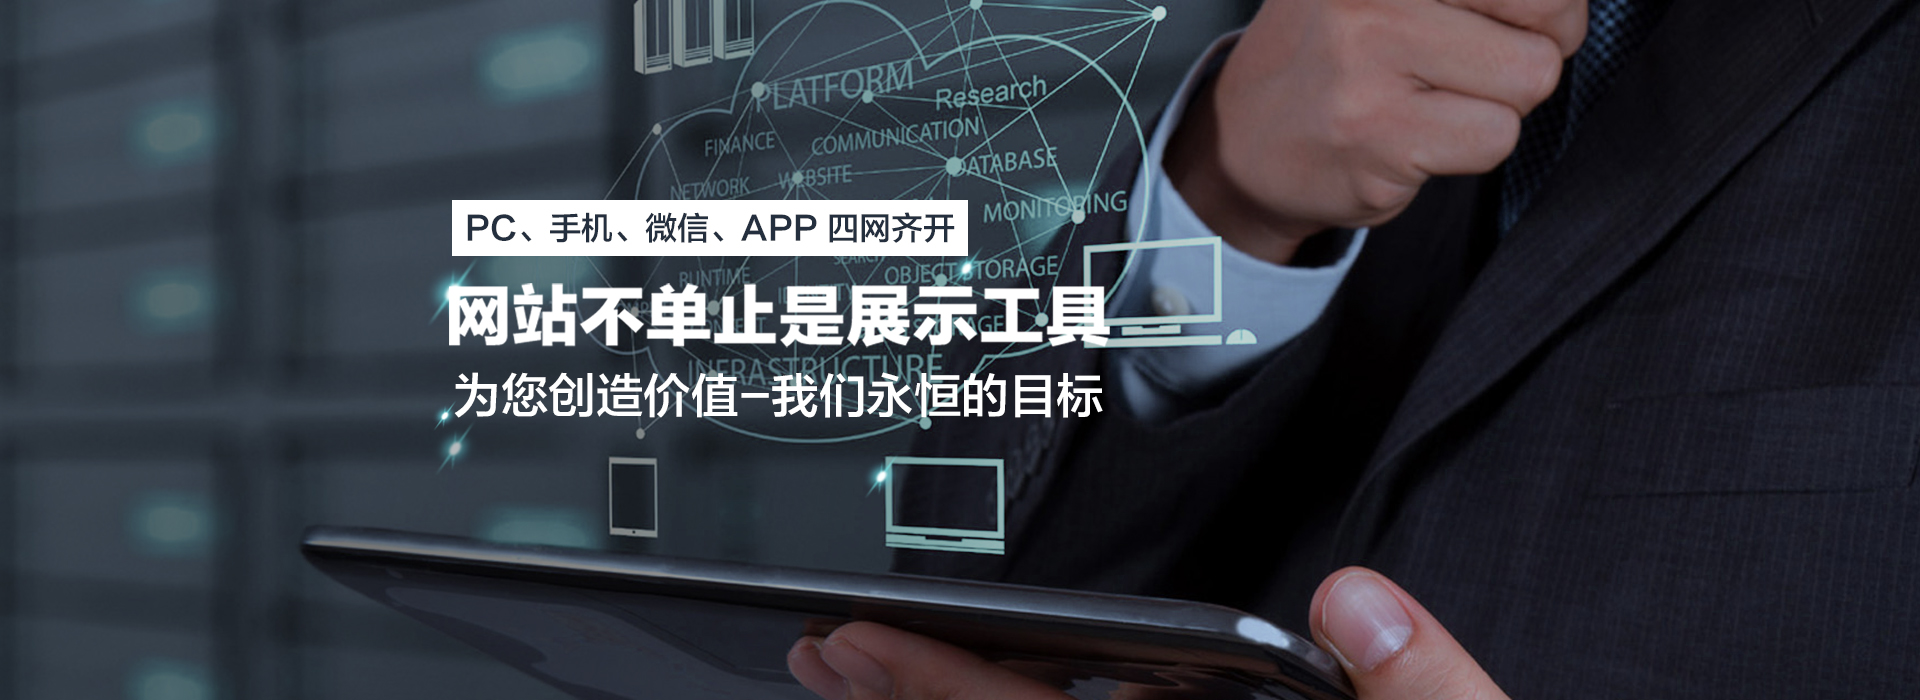 深圳做网站的公司是怎样提升网站页面的运行速度?